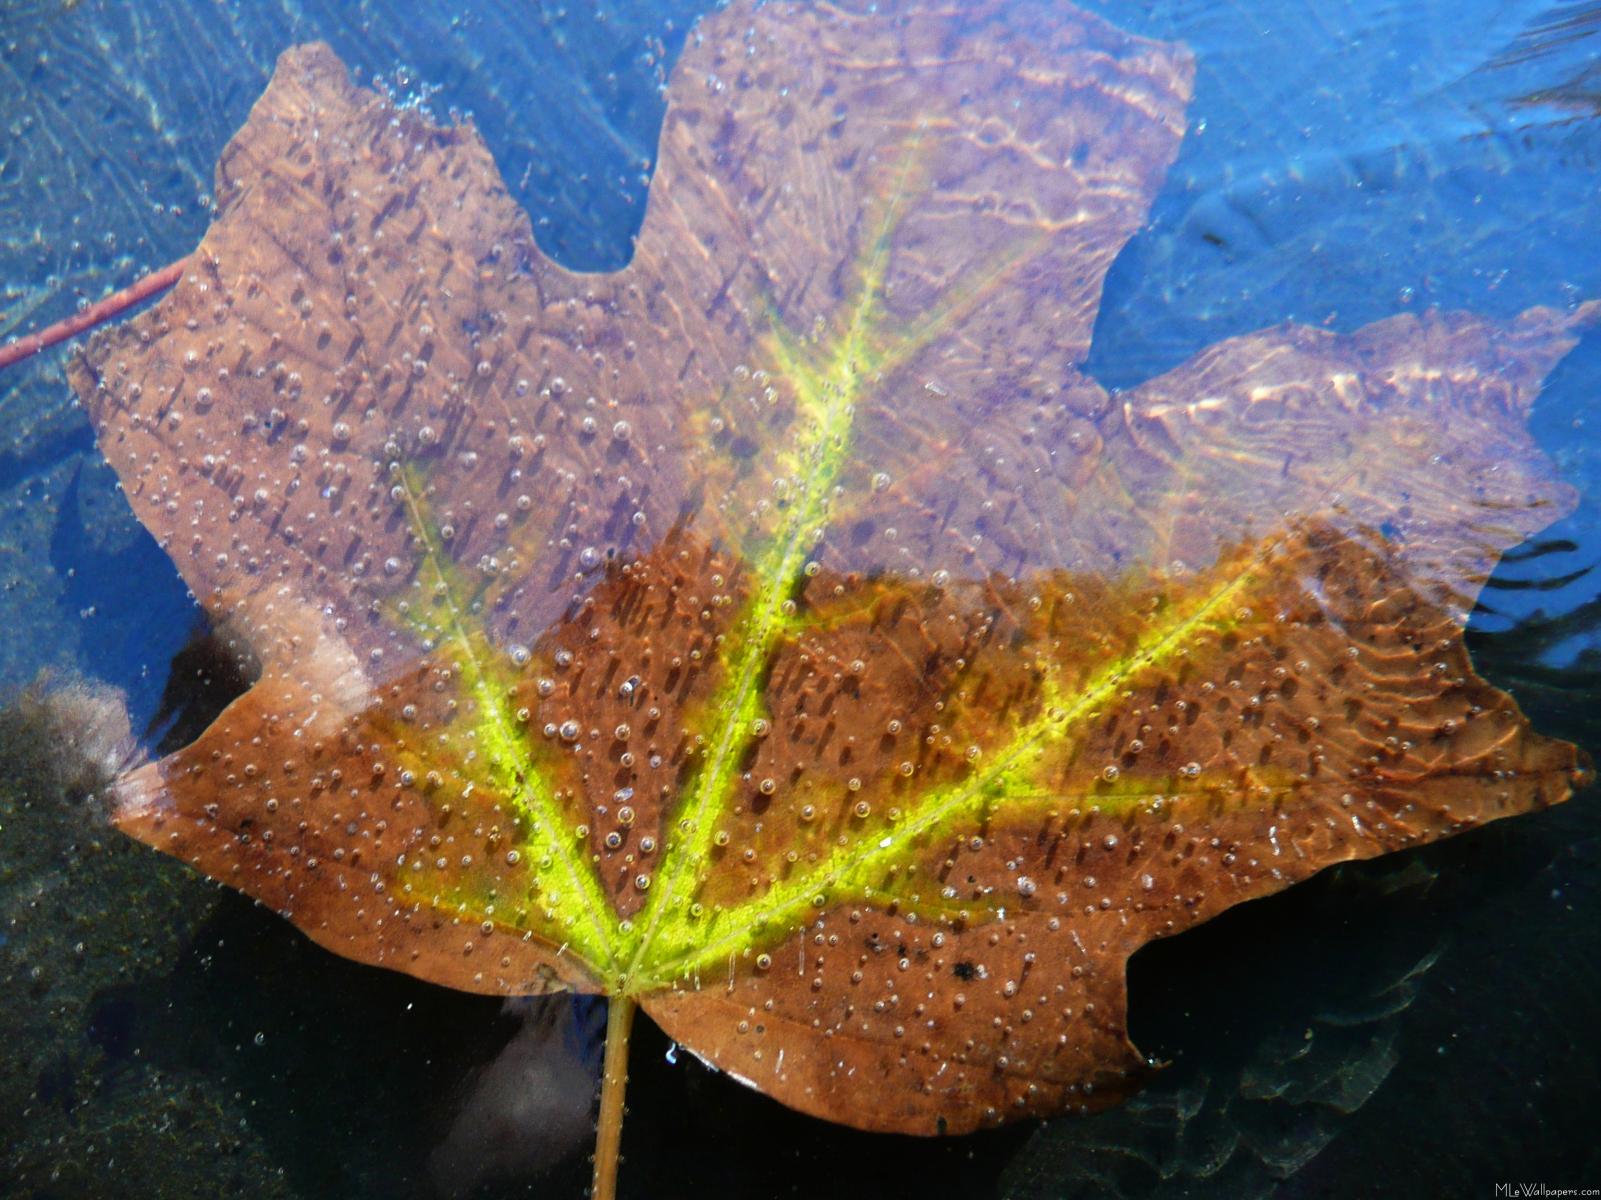 Frozen Fall Maple Leaf - Macro Photography - HD Wallpaper 